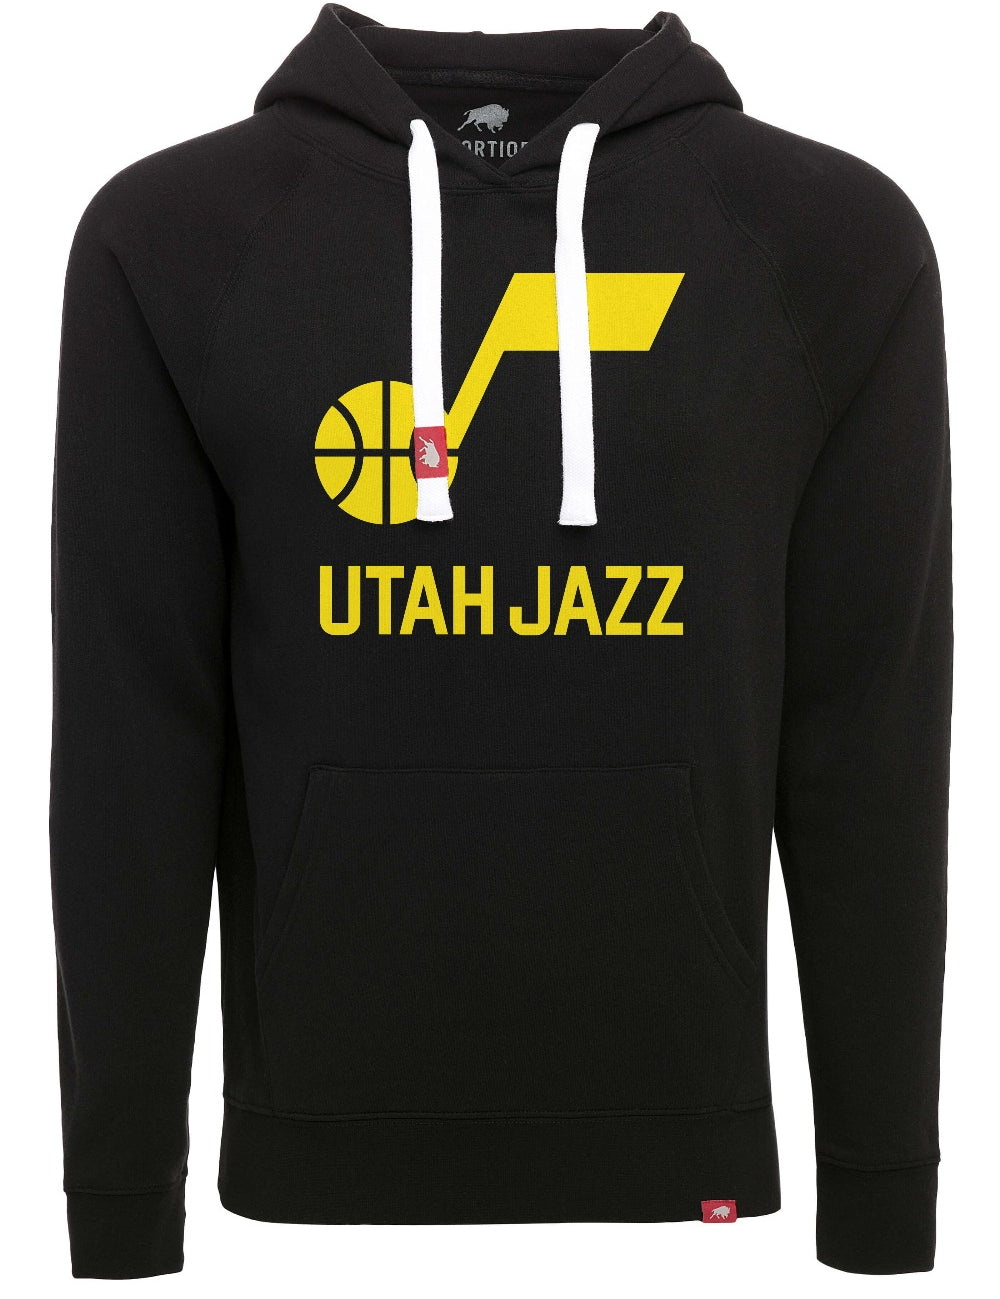 Mens – Utah Jazz Team Store